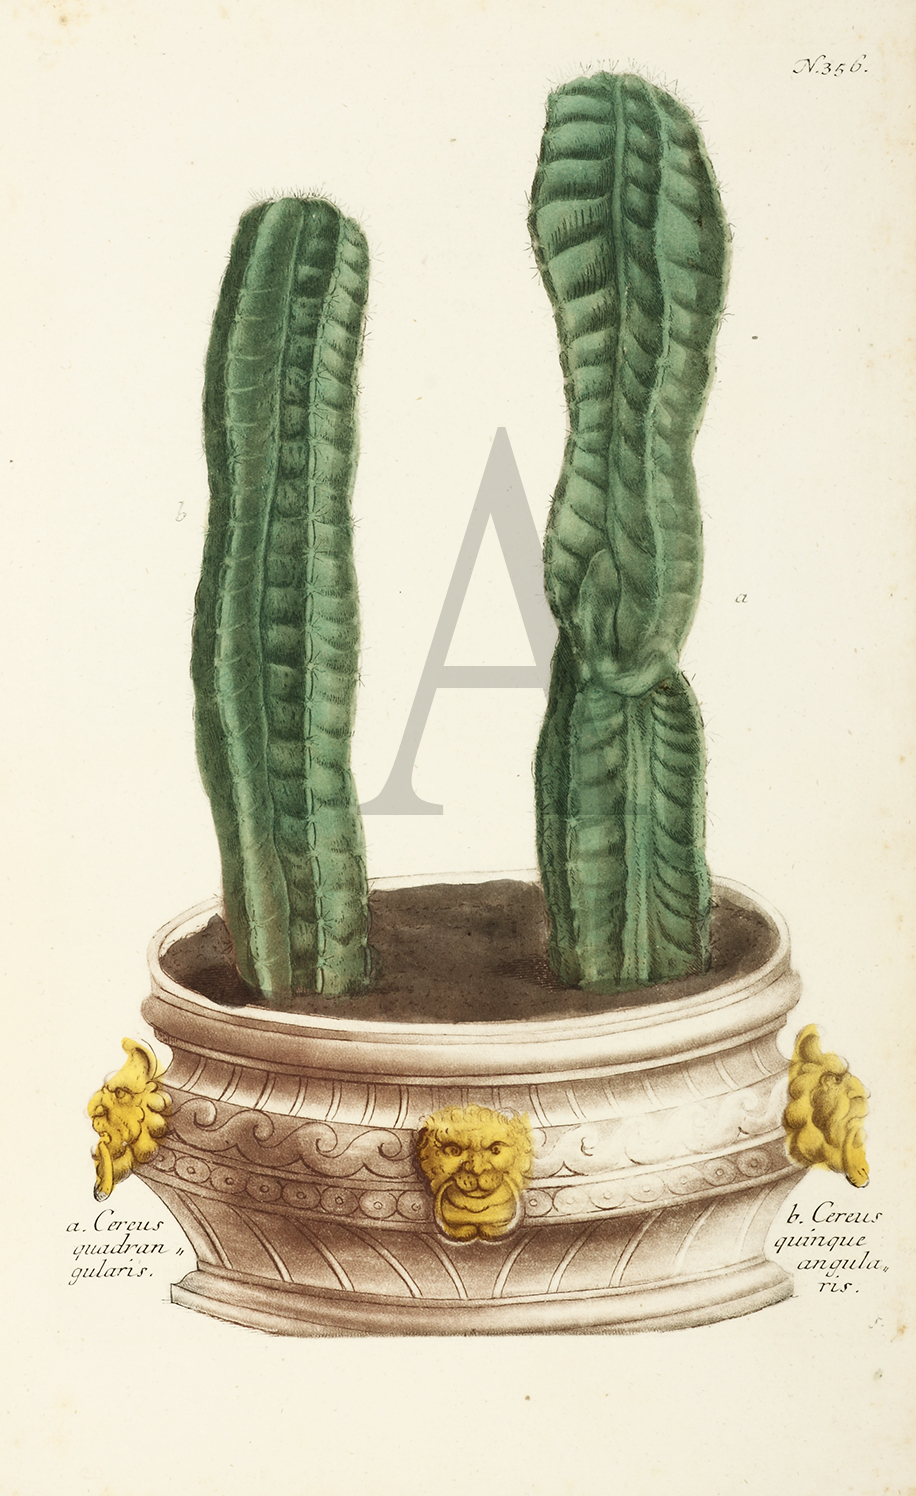 a. Cereus quadran gularis. b. Cereus quinque angularis. - Antique Print from 1736